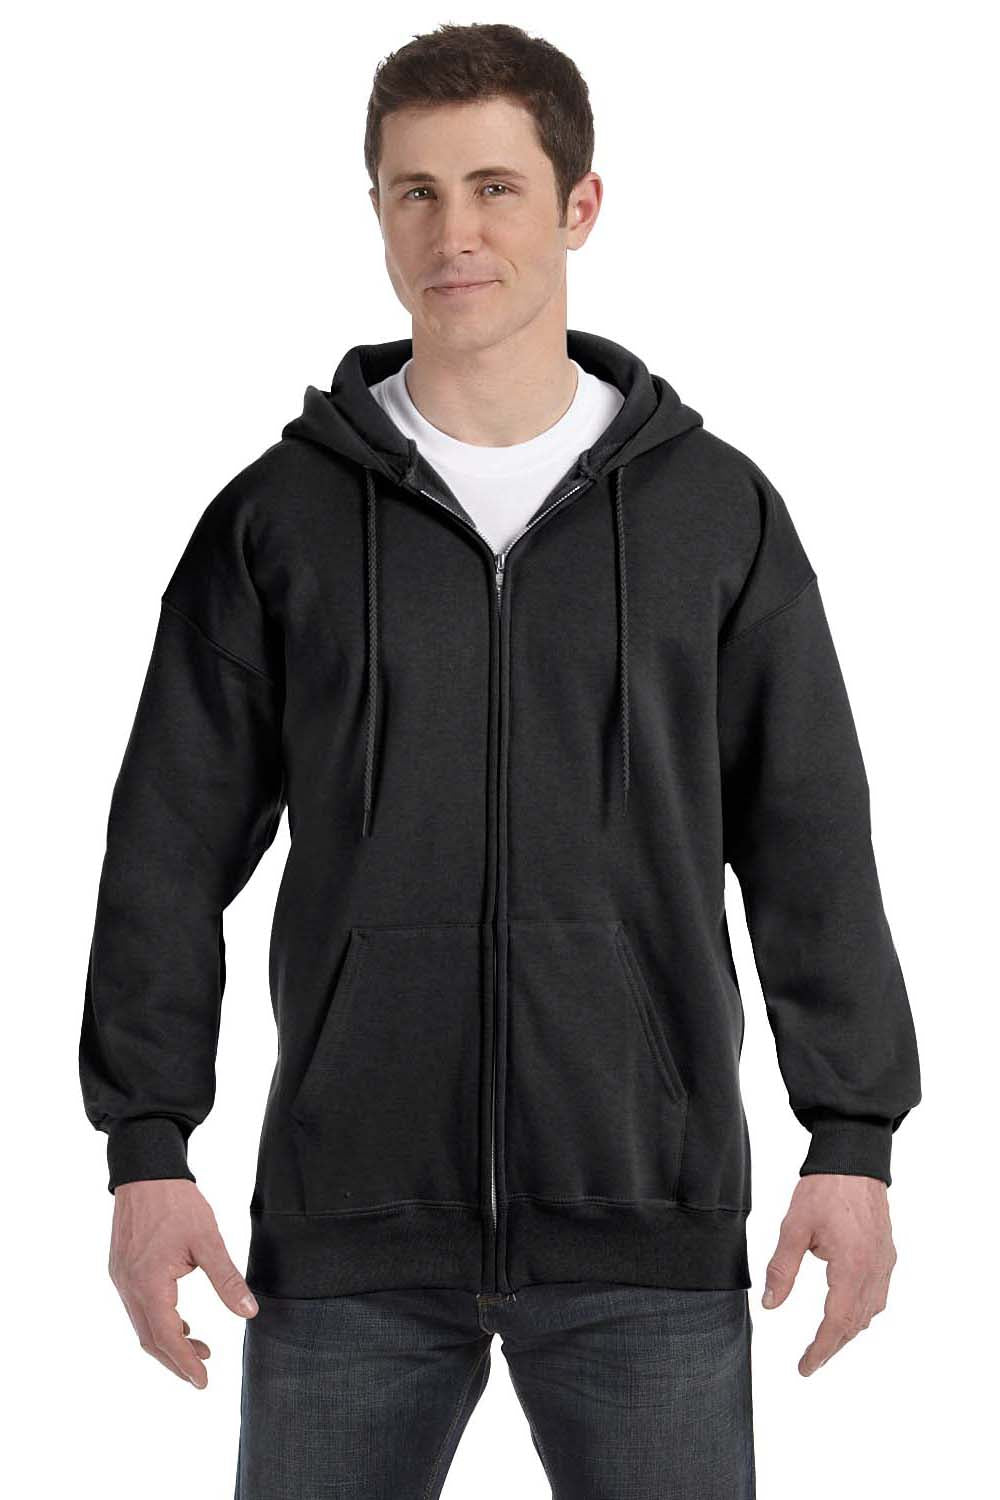 Hanes F280 Mens Ultimate Cotton PrintPro XP Full Zip Hooded Sweatshirt Hoodie Black Front